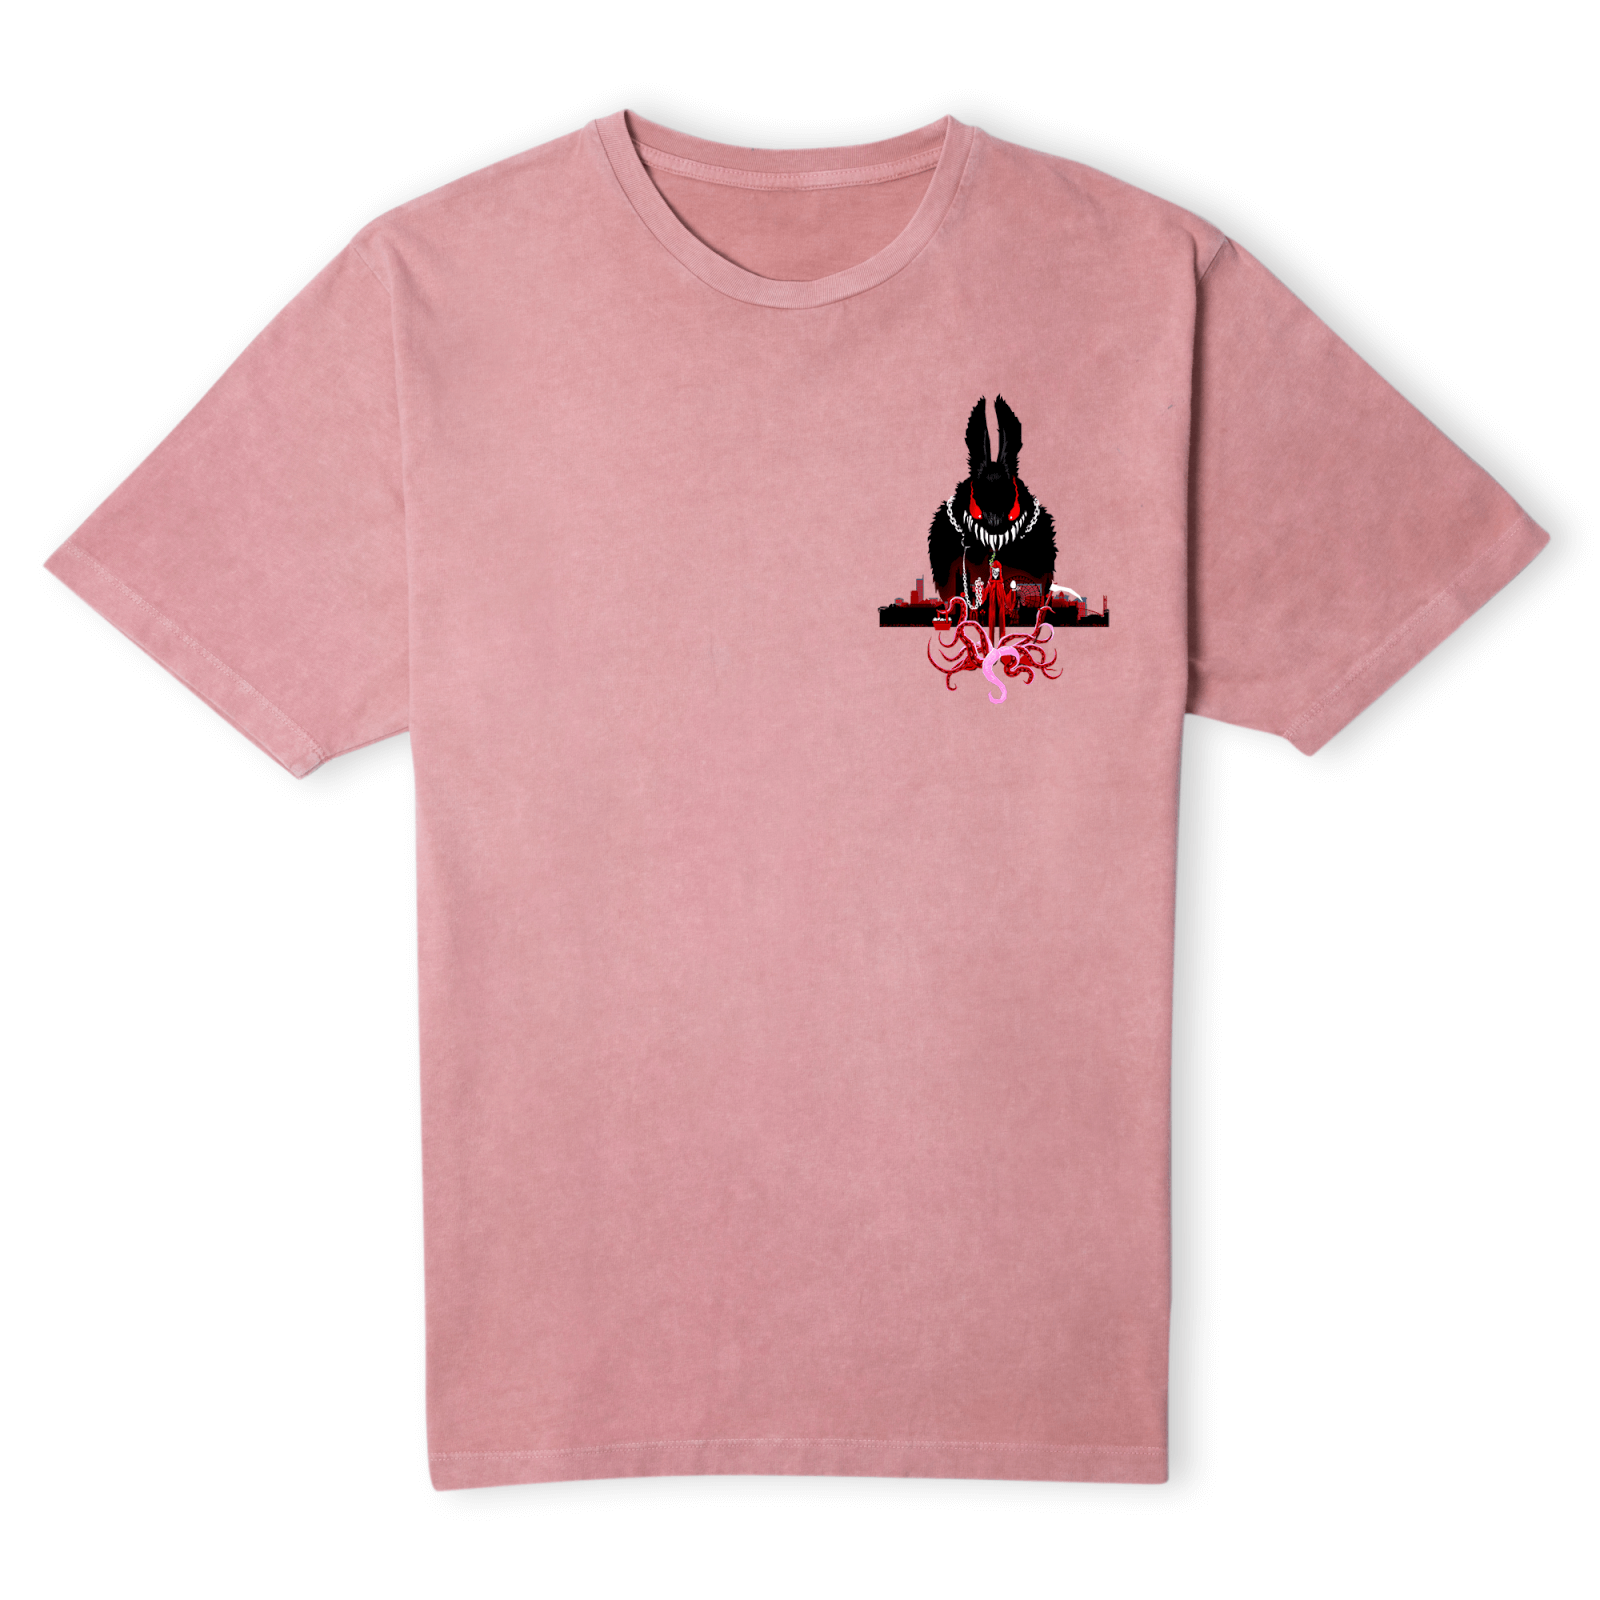 Grimmfest 2022 Easter Bunny Unisex T-Shirt - Pink Acid Wash - XS - Pink Acid Wash